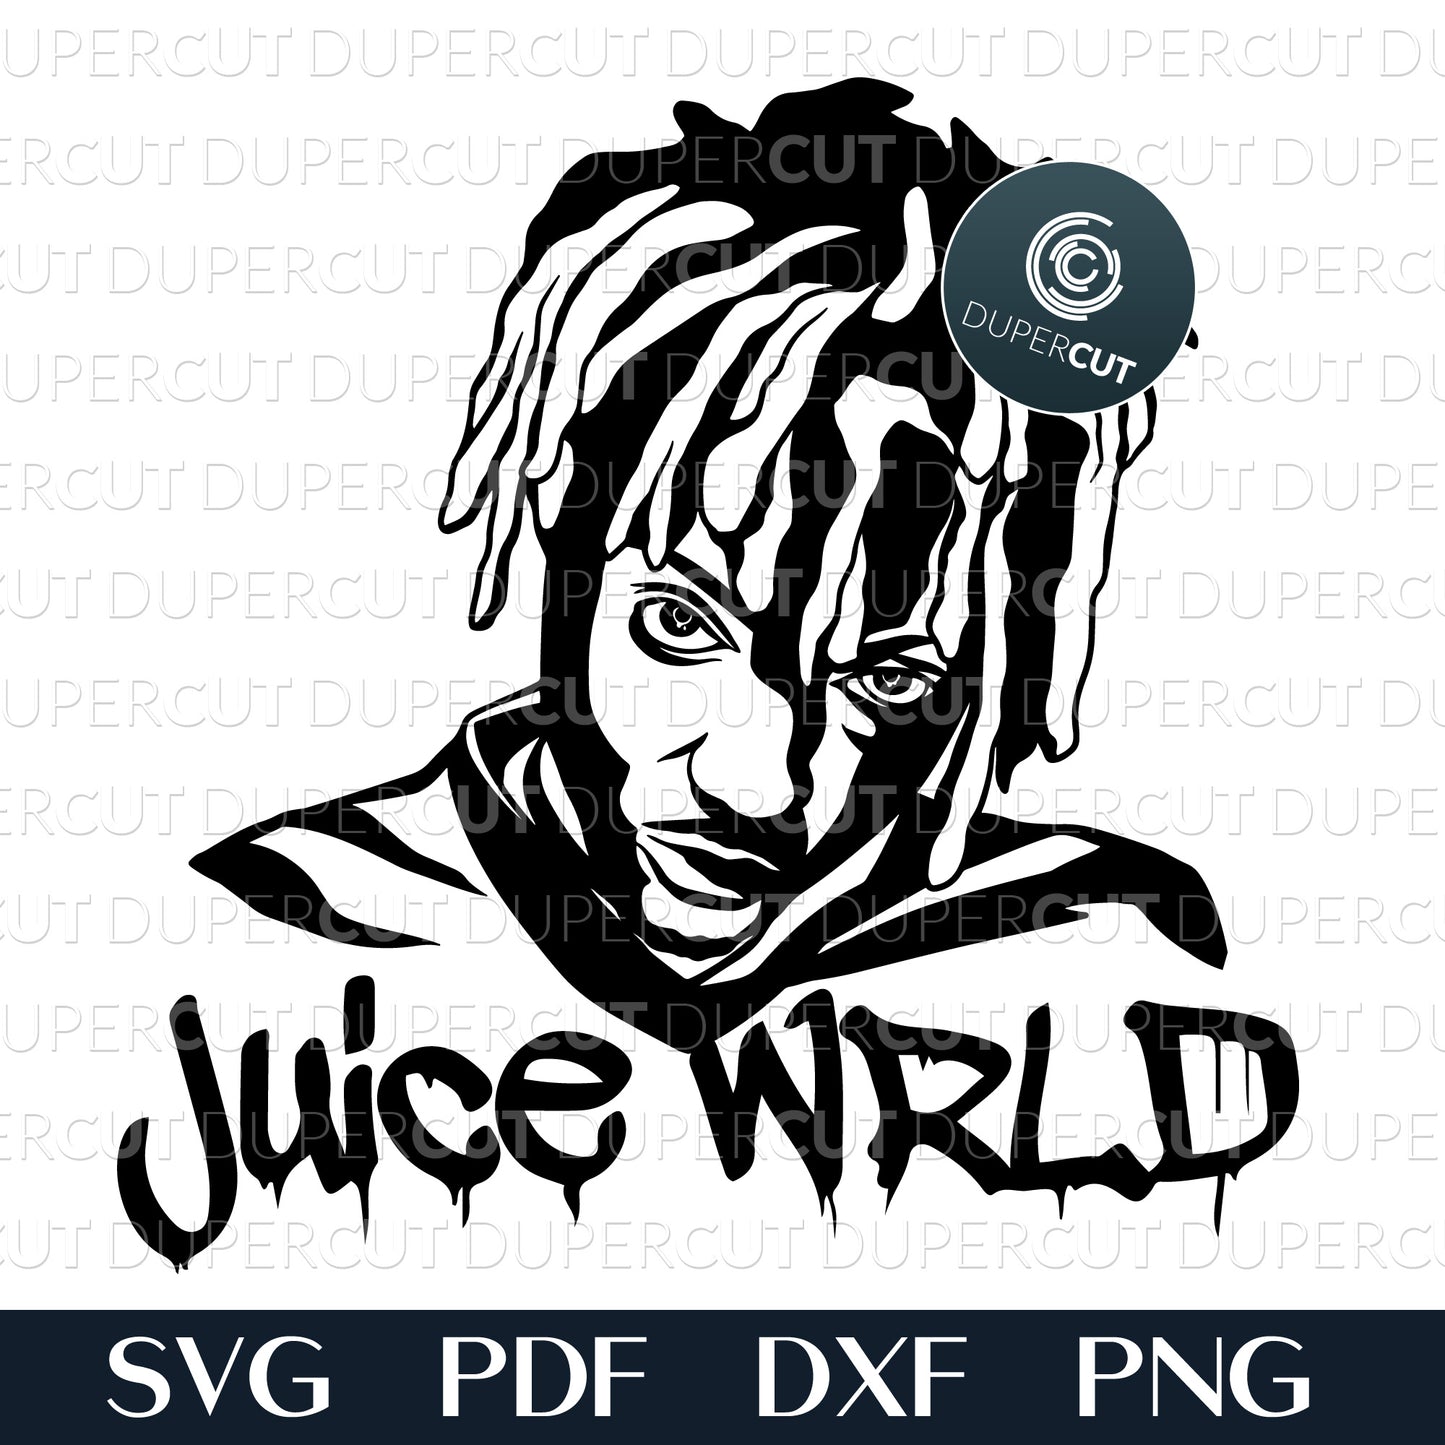 Juice WRLD Rapper - SVG / PDF / DXF